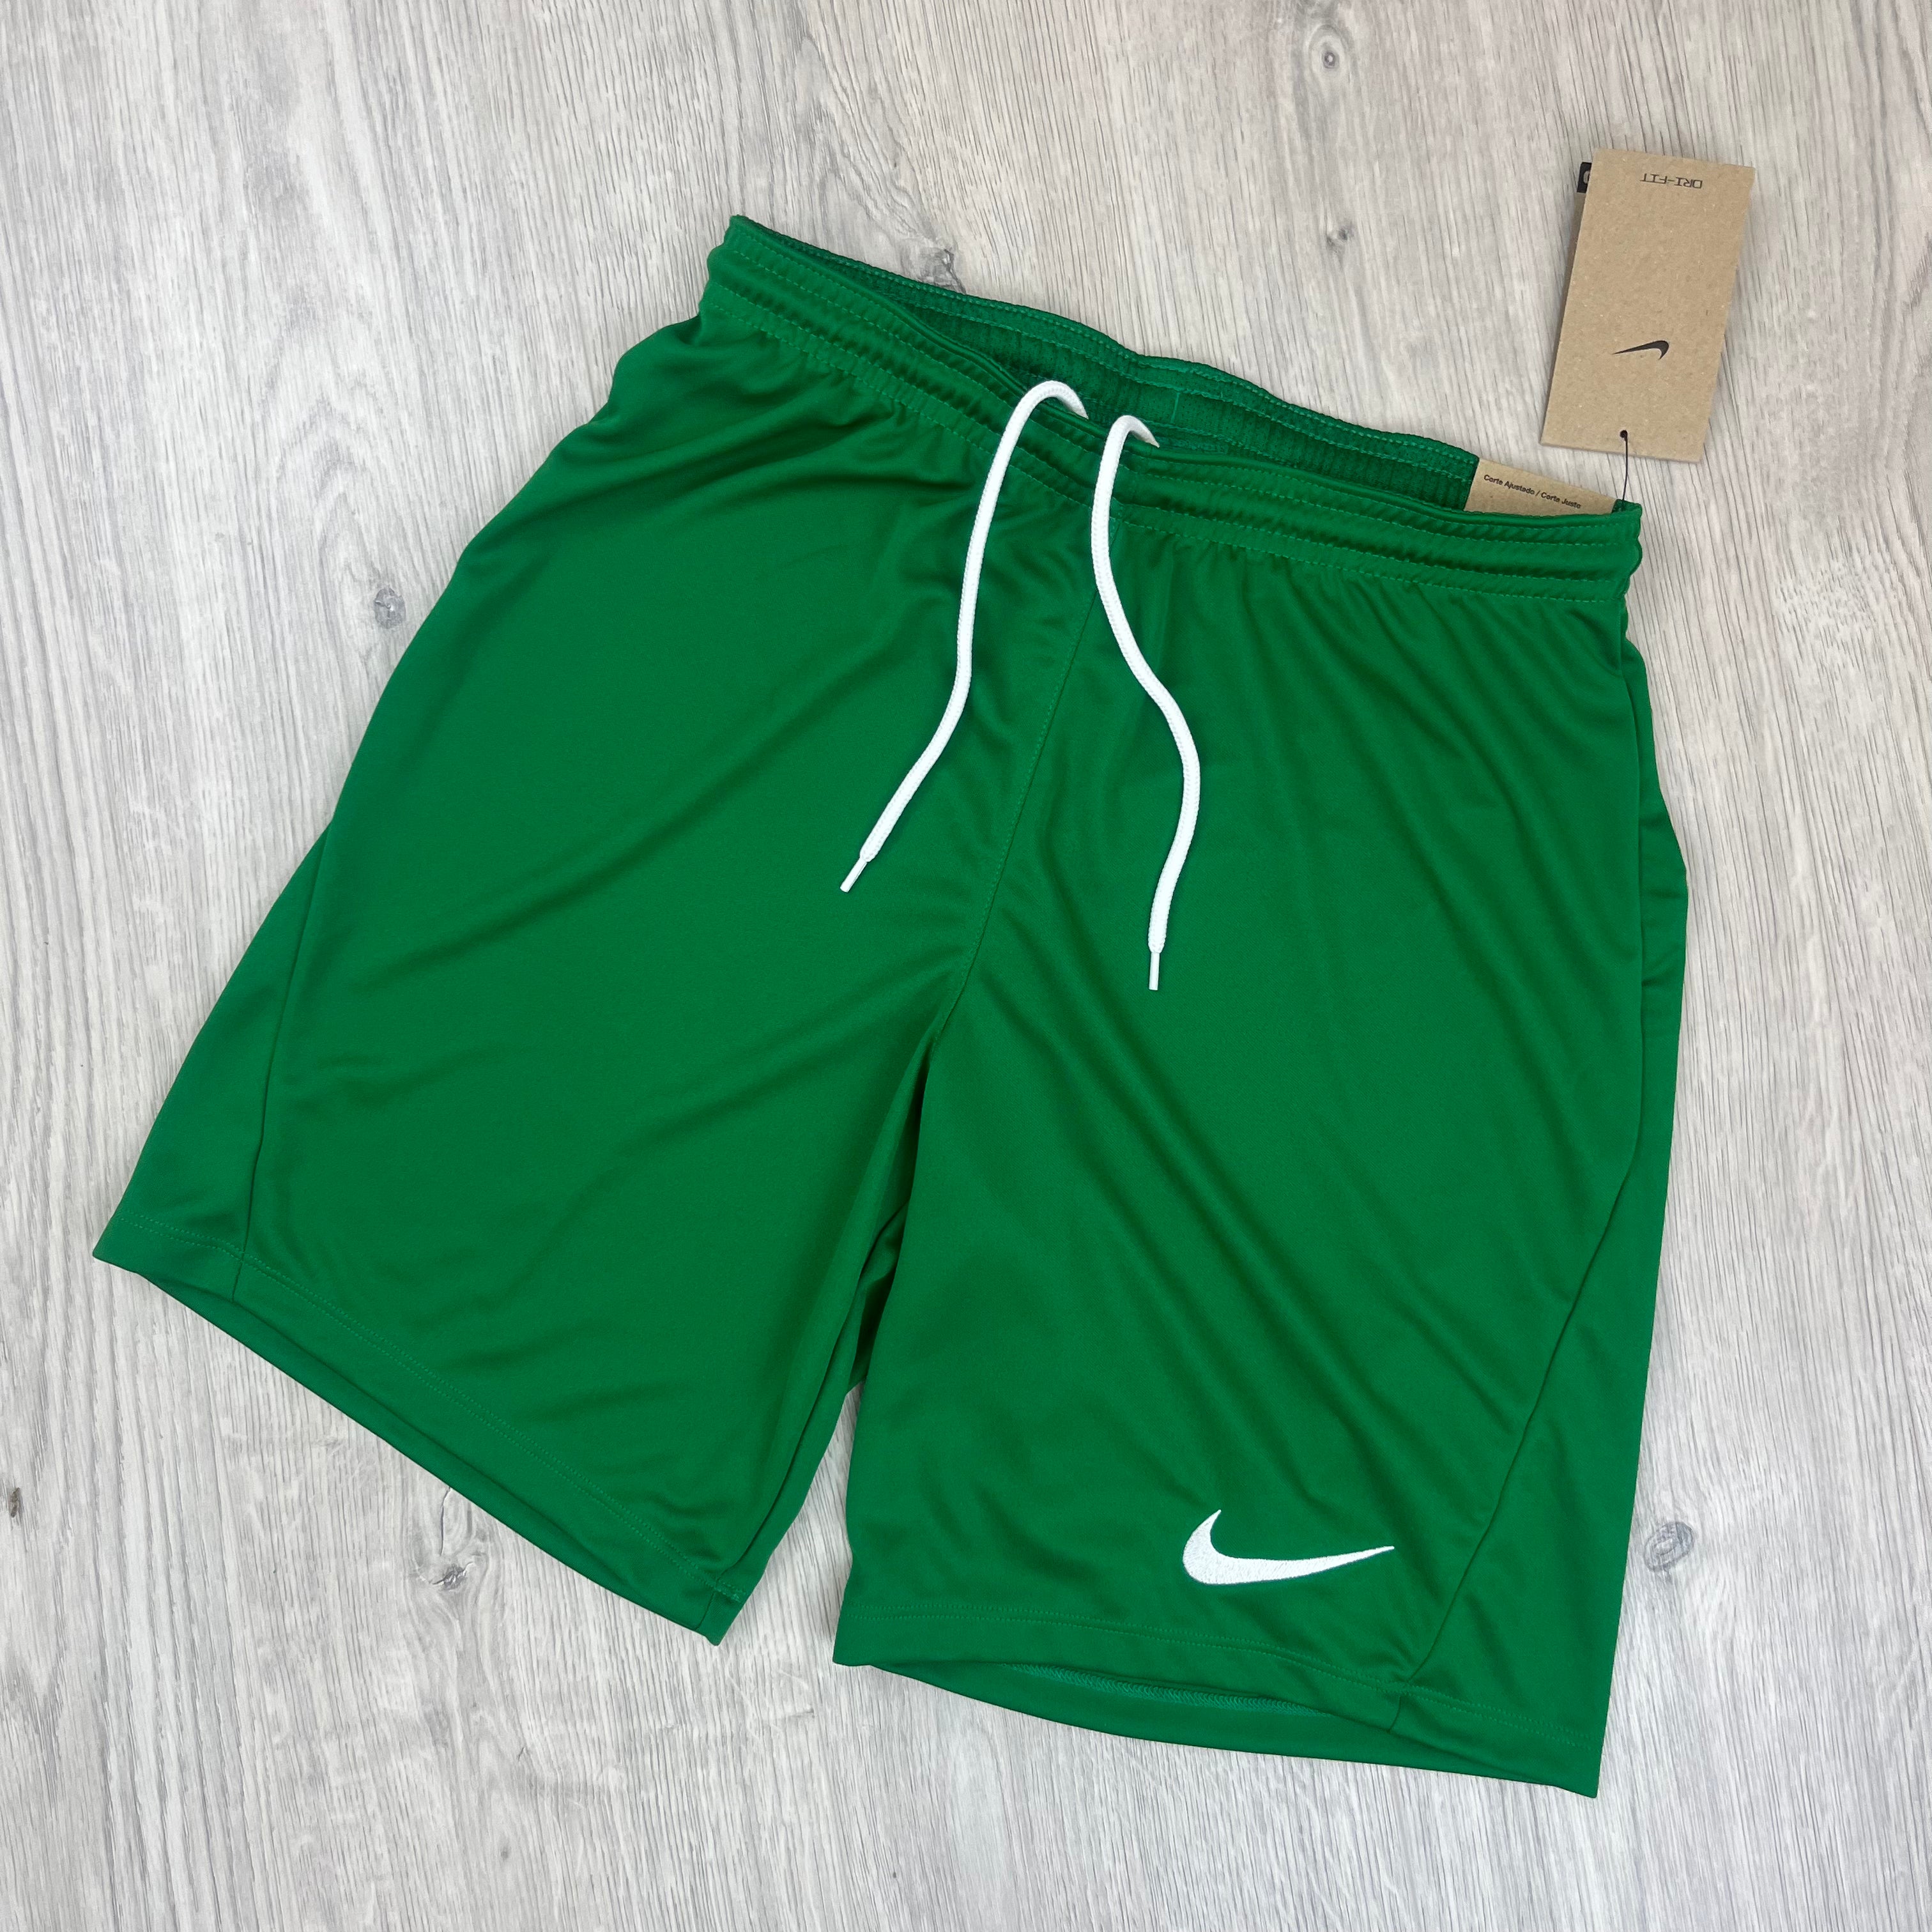 Nike Dri-Fit Shorts - Green